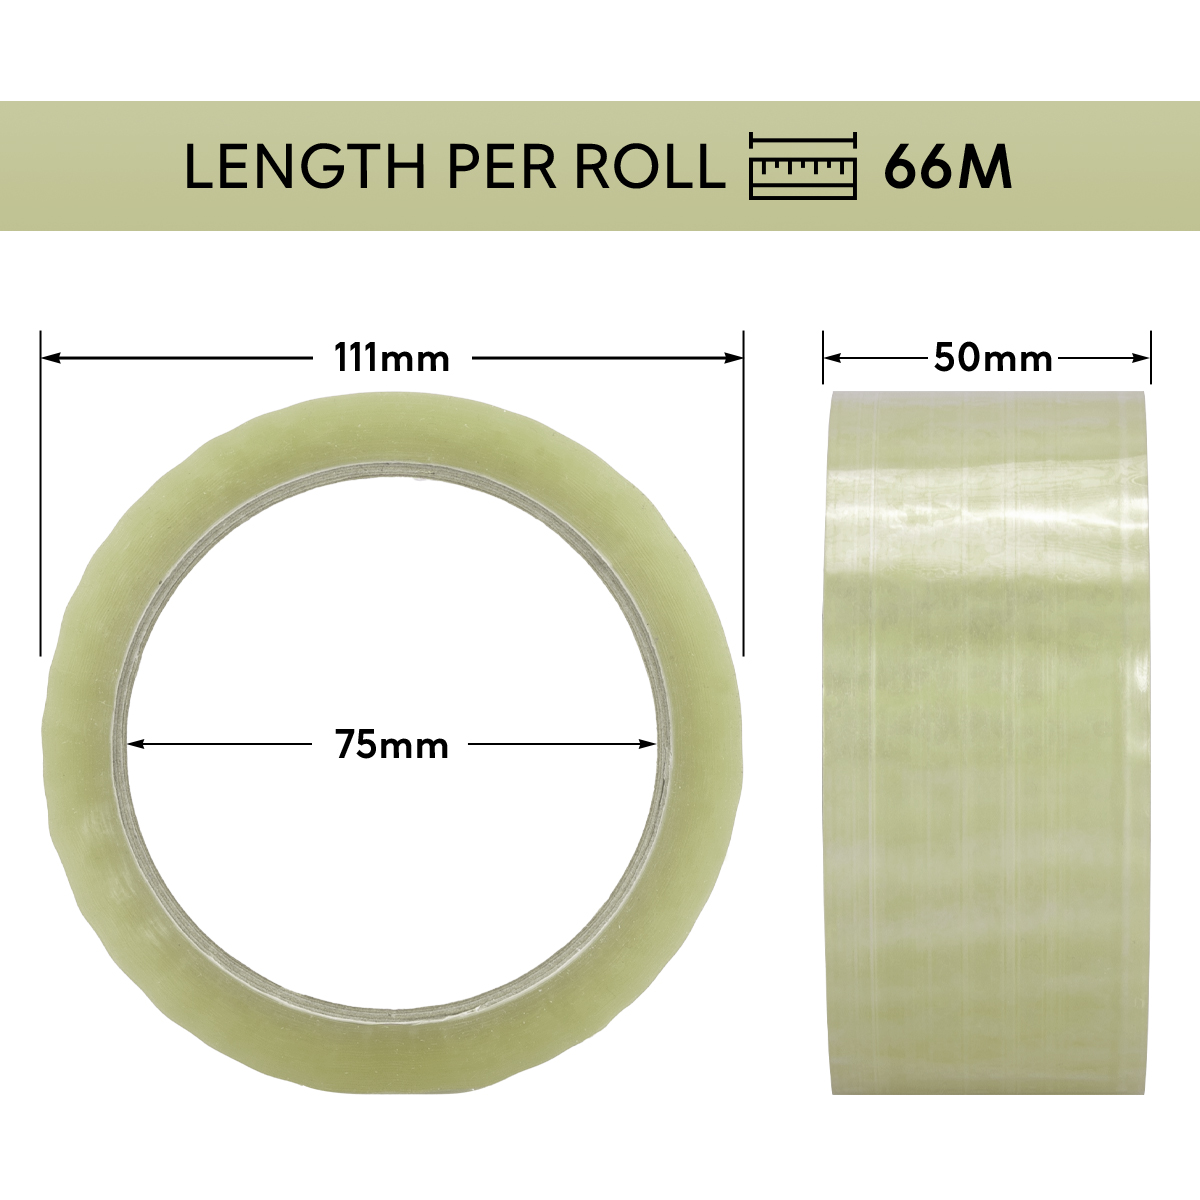 Quality Adhesive Tape PP Extra Quiet 66m x 50mm Transparent